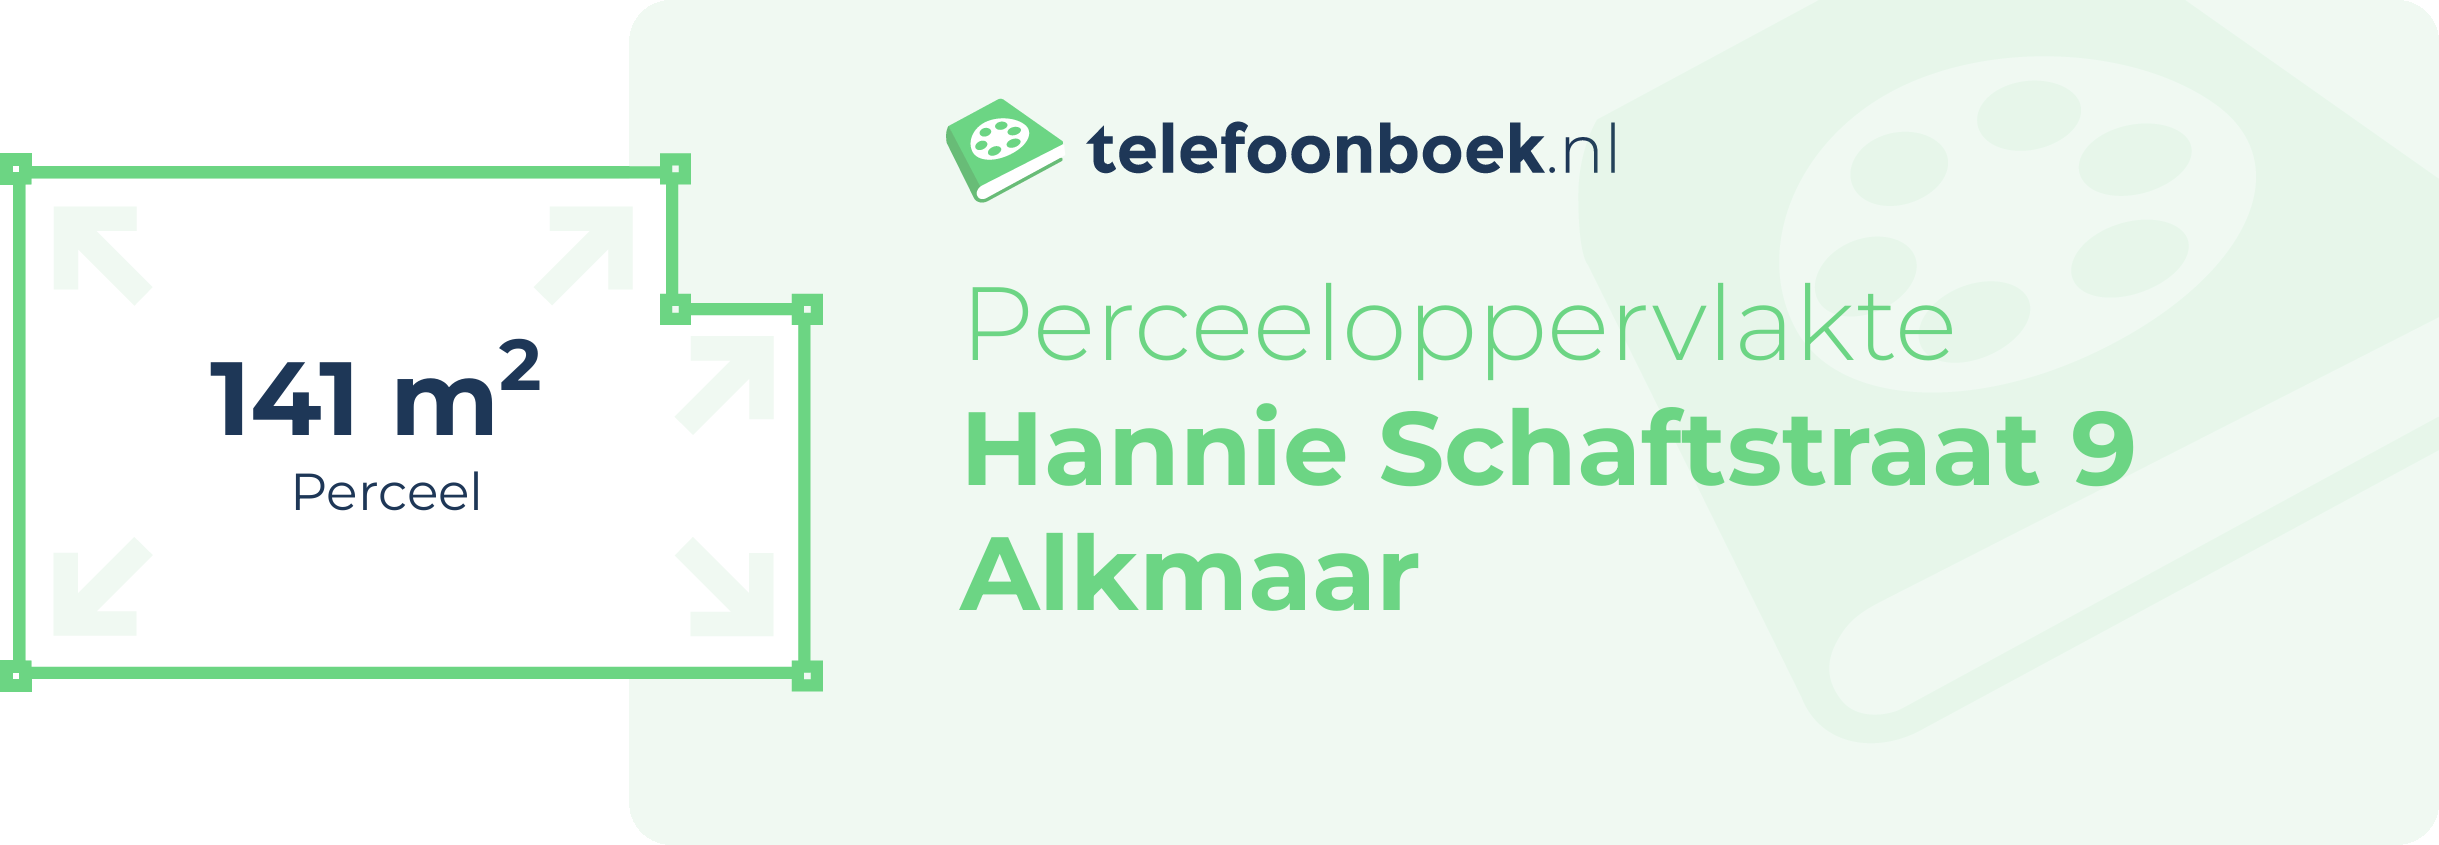 Perceeloppervlakte Hannie Schaftstraat 9 Alkmaar